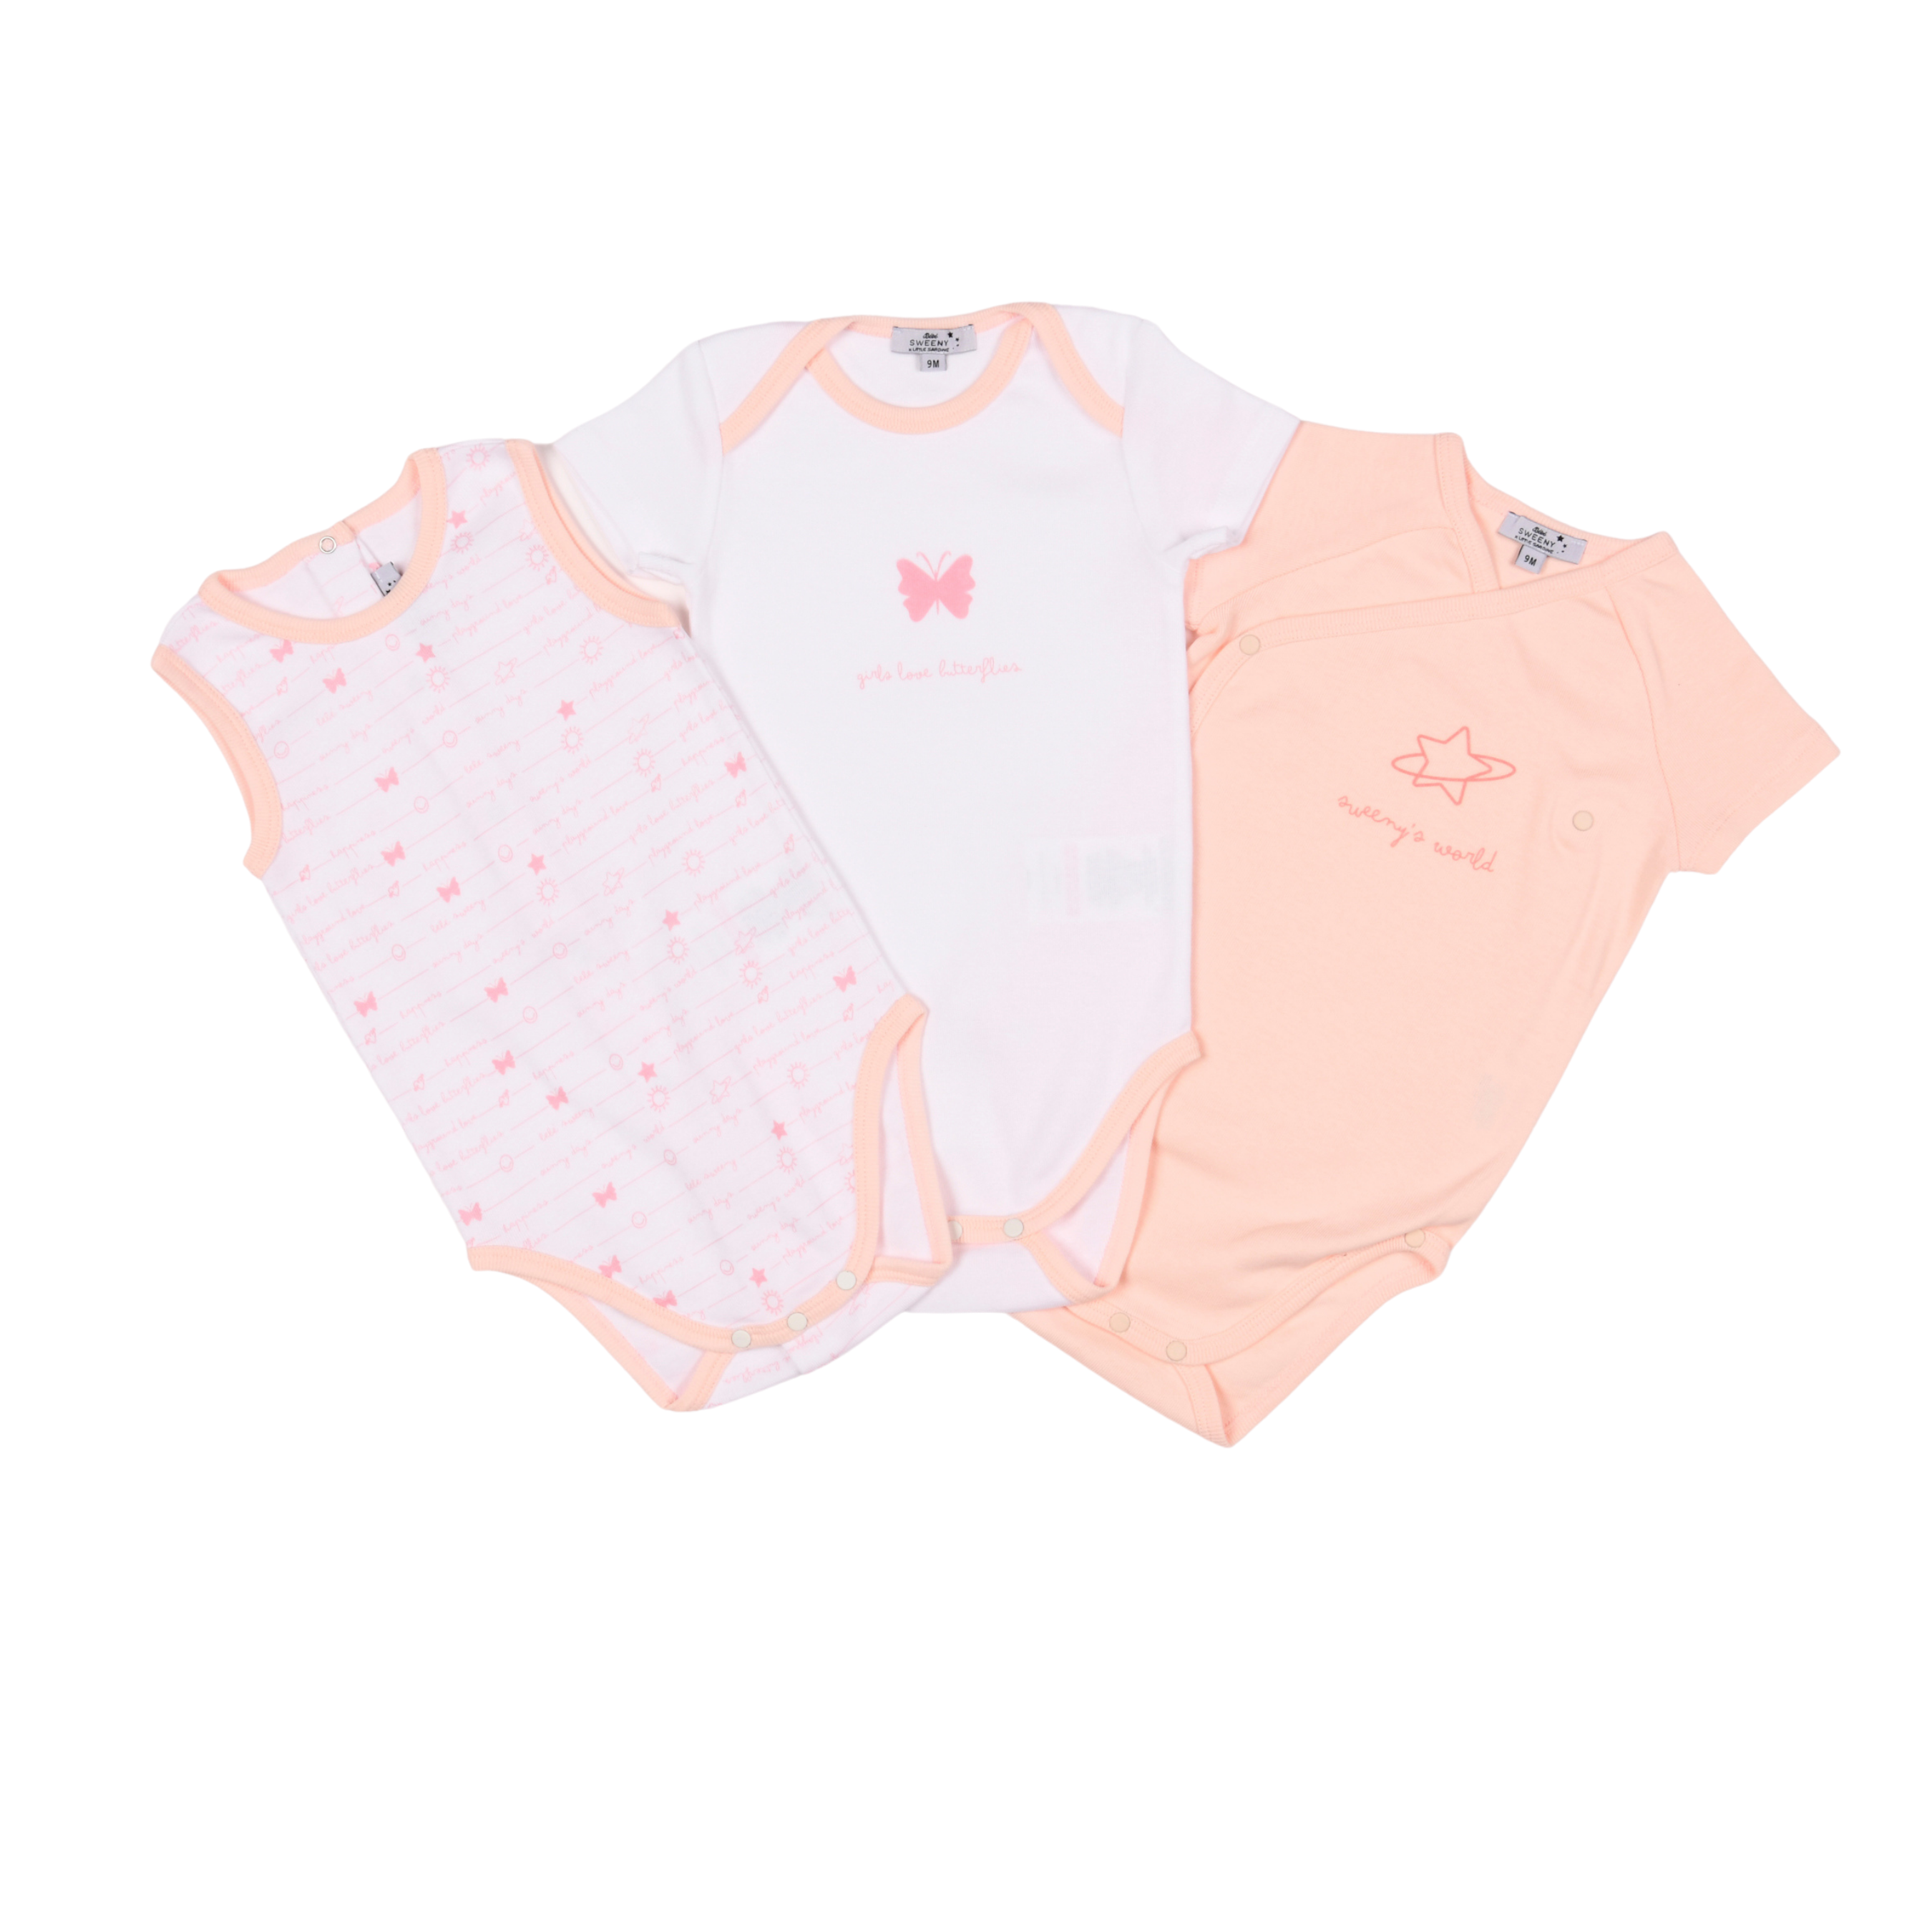 Baby Girls White & Cloud Pink Organic Cotton Bodysuit Set (4)